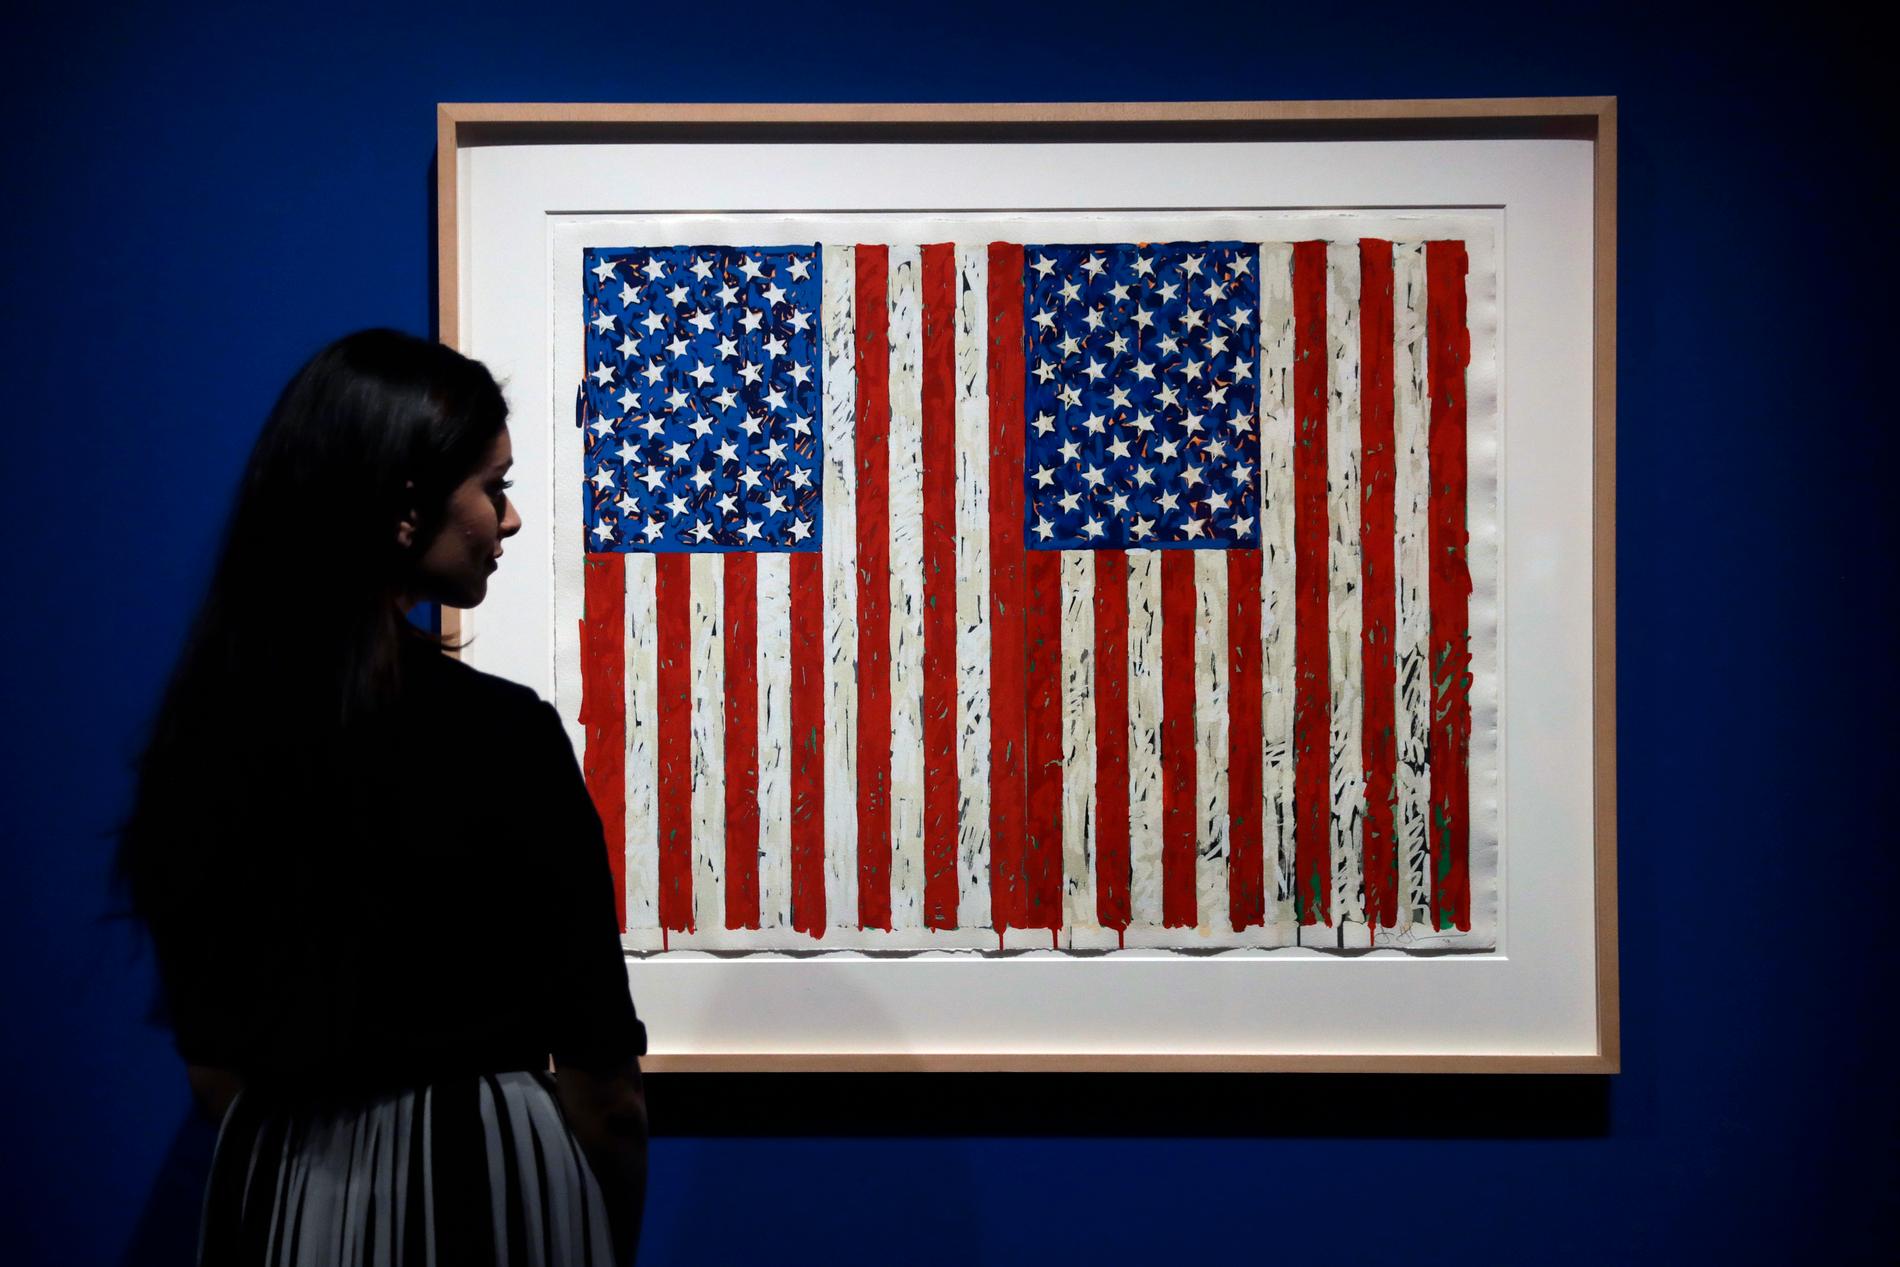 En avbildning av den amerikanska flaggan, värd minst en miljon dollar, har donerats till British Museum i London.